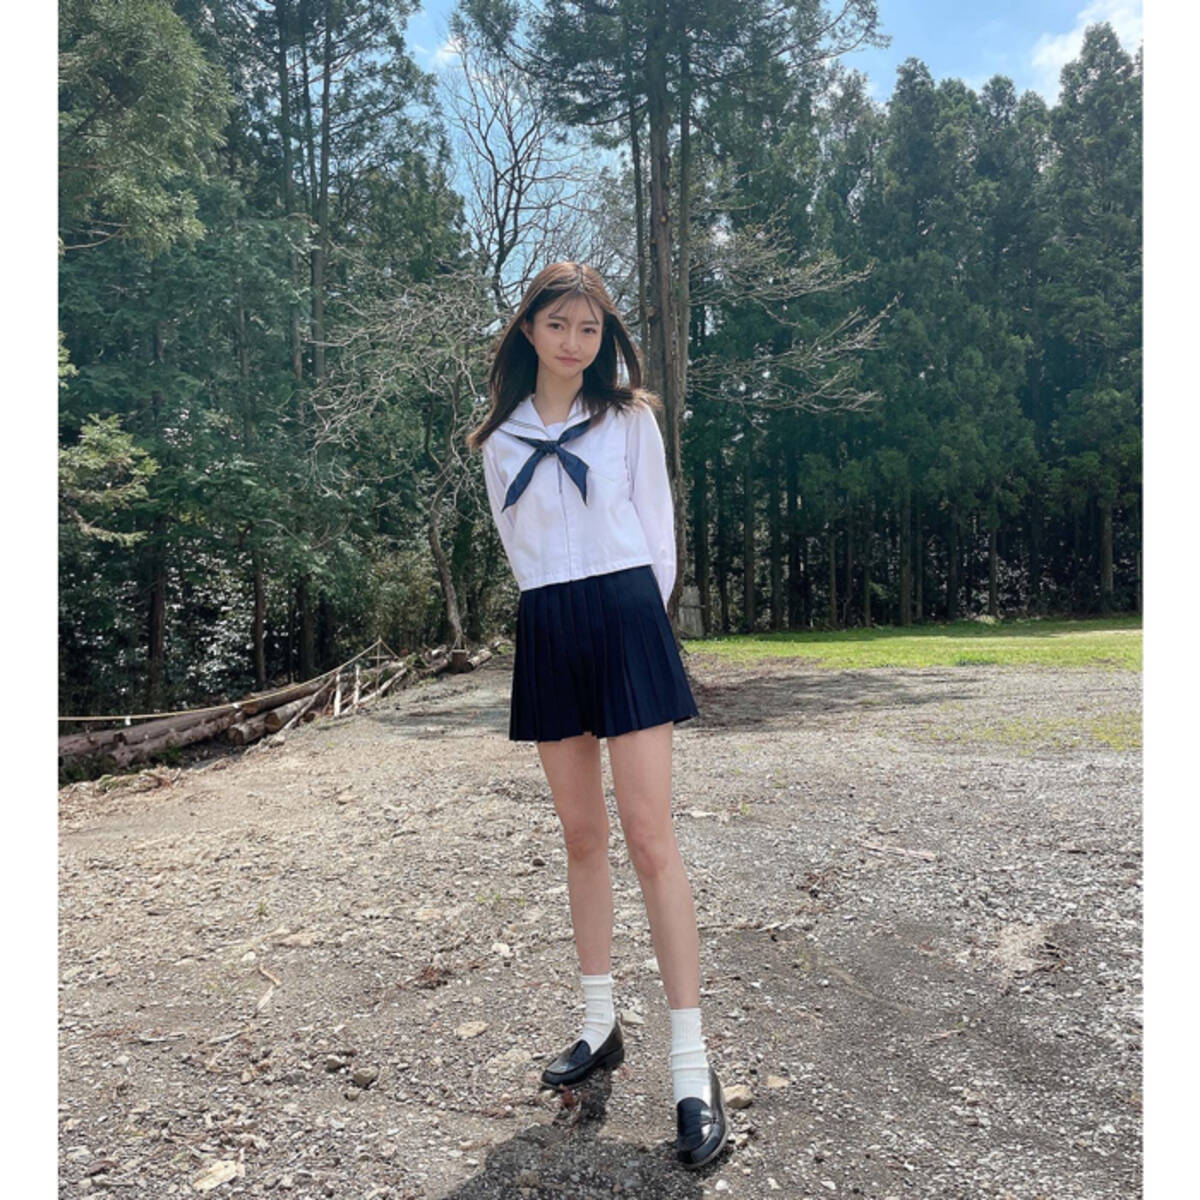 橋本萌花、セーラー服姿でスレンダーな美脚を披露！「可愛いすぎです」 (2021年5月23日) - エキサイトニュース